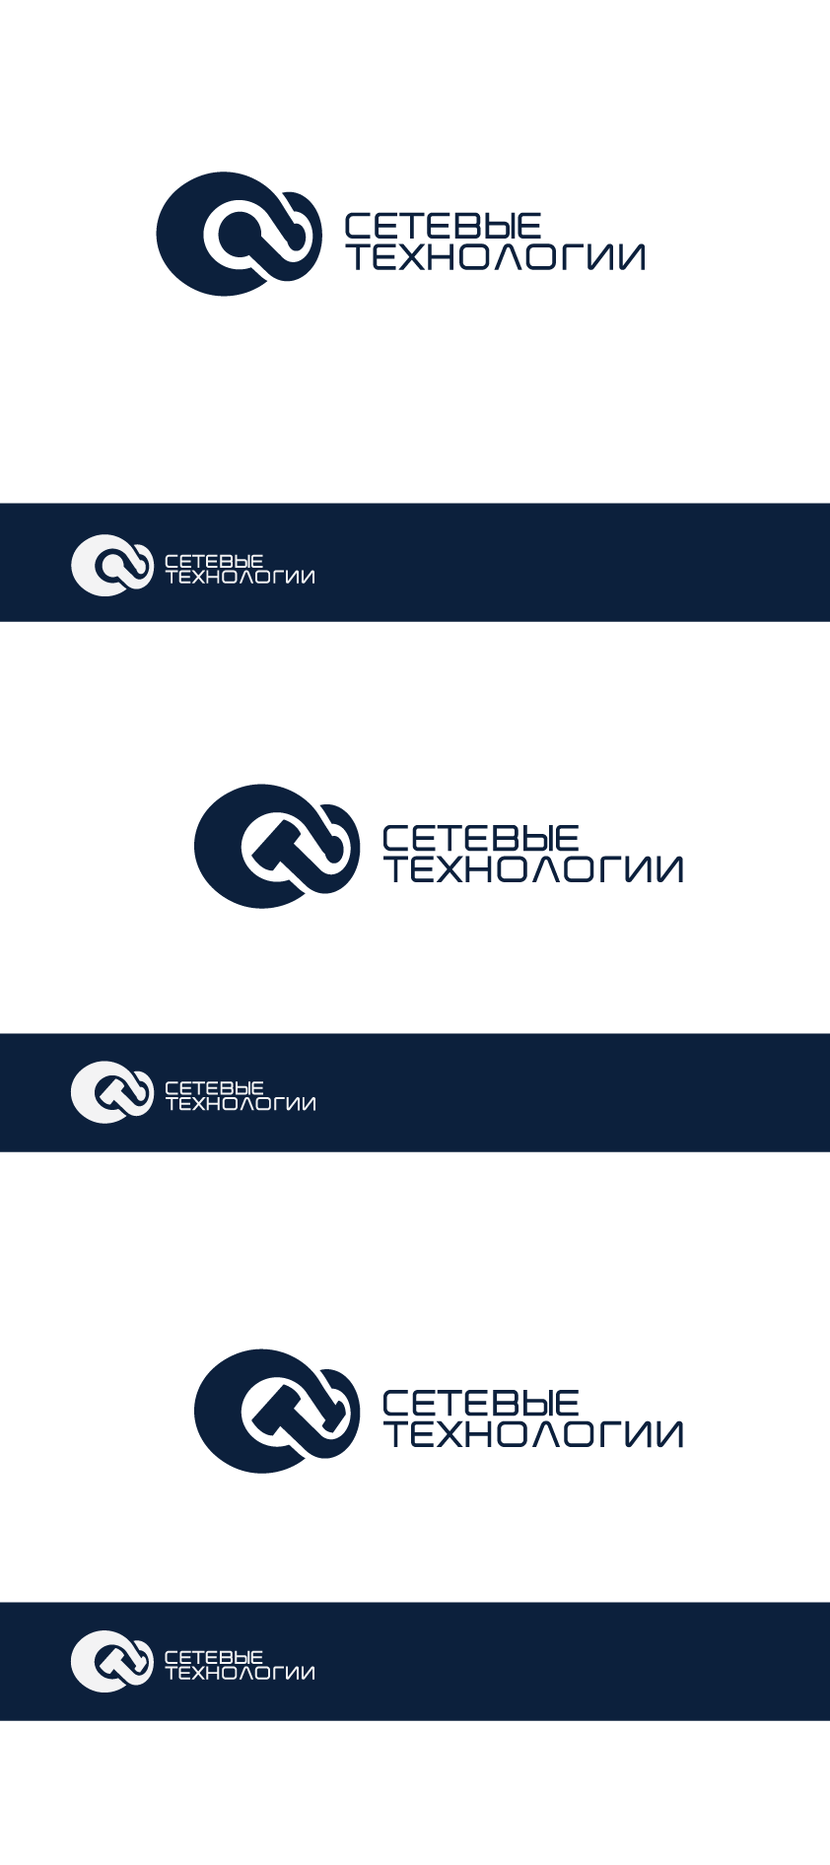 Доработка логотипа с нового сайта. Варианты с двумя С, имеющими контакты, сетевые линки, так же С+Т и СТ+СТ. - Разработка/редизайн логотипа для компании Сетевые технологии